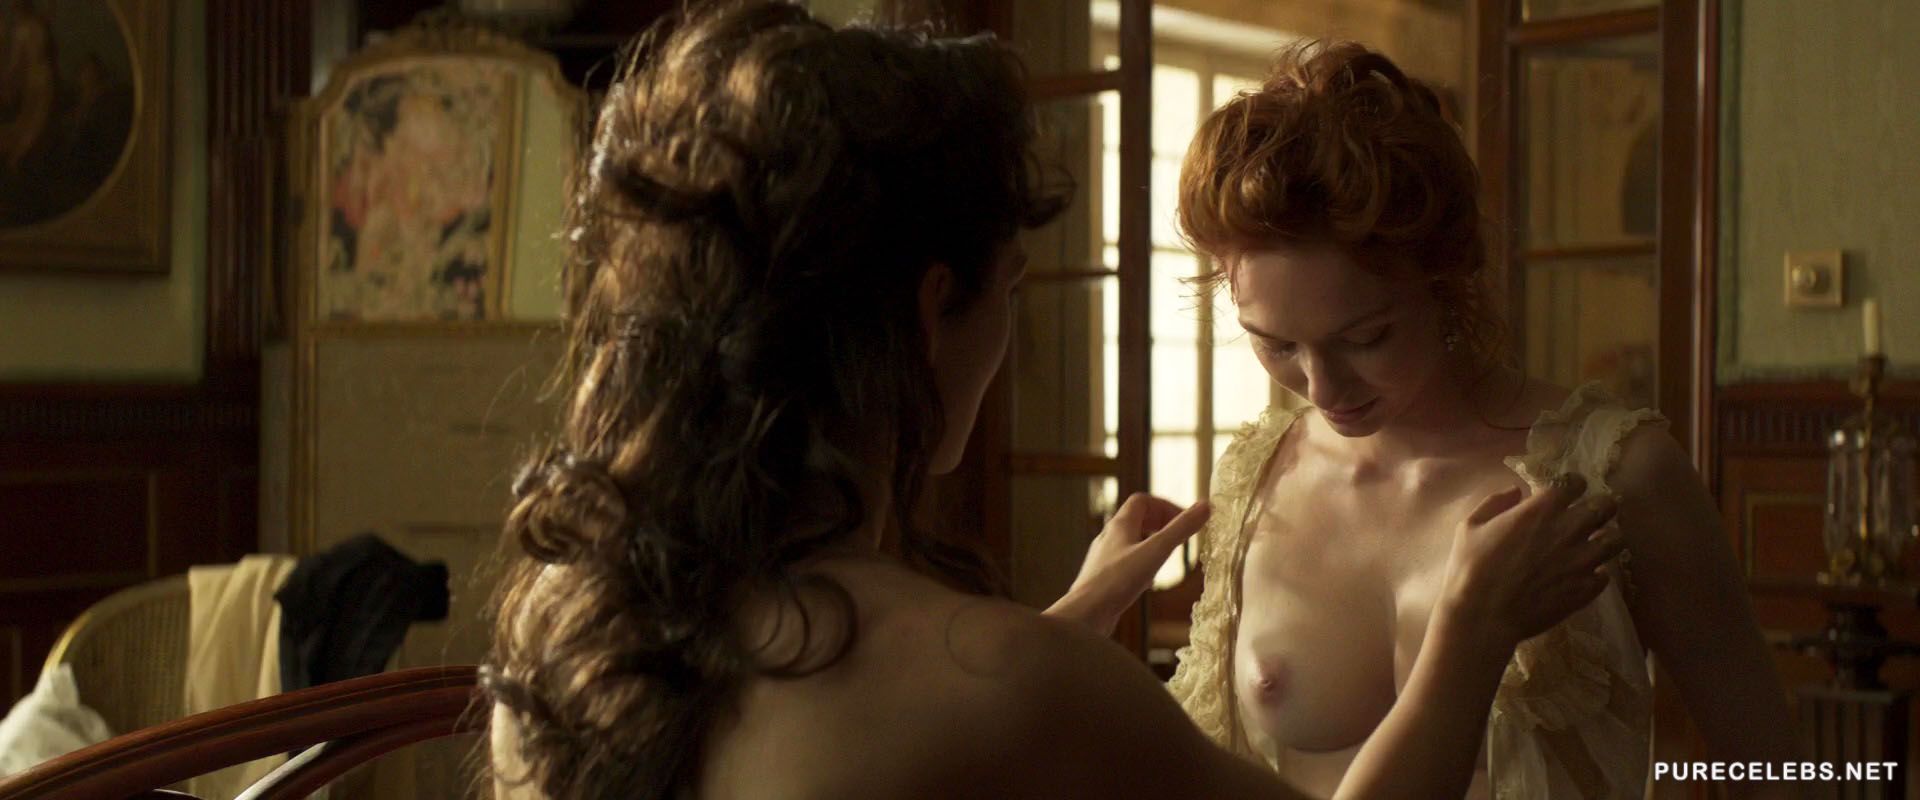 Keira Knightley nude. 